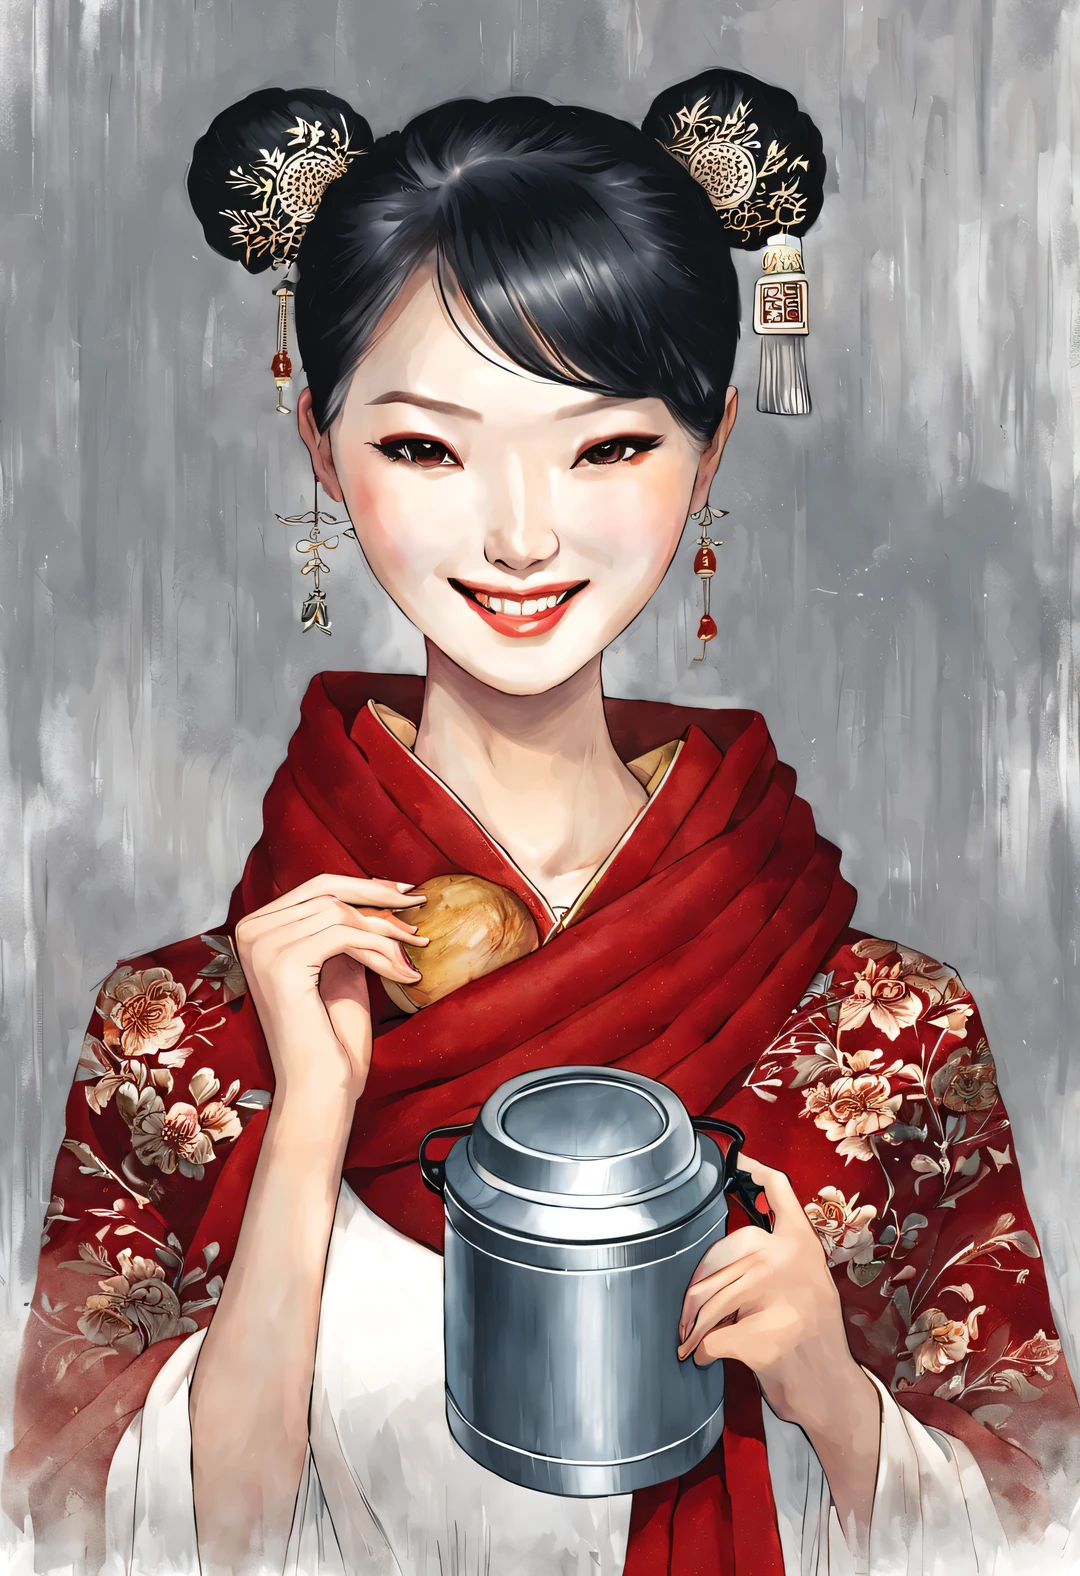 (現代アートとファッションキャラクターデザイン), 非常に統一されたCG, (ハーフサイズのクローズアップ), (保温弁当箱を持って優しく微笑む美しい中国の女の子: 1.37), (幅広の赤いウールのスカーフを巻いて: 1.0), (大きなサングラスとお団子ヘア: 0.95), クラシックとモダンの調和のとれた組み合わせ, (濃紺のセーターとジーンズ: 0.68), モダンでスタイリッシュな服, 優雅, 色白で完璧な滑らかな肌を持つ女の子, 高い鼻梁, 頭を上げた姿勢, 悲しいけれど美しい, 細身の体型, 絶妙な顔立ち, 渦巻く霧のイラスト, 水墨画, 黒髪, ミートボールヘッド, 誇りに思う, シュルレアリスム, 現代アート写真, アクションペインティングイラスト, 抽象表現主義, ピクサー, 被写界深度, モーションブラー, バックライト, 放射線, 衰退, ヘッドアップ角度, ソニーFEゼネラルマネージャー, 超高解像度, 傑作, 正確な, キメのある肌, スーパー詳細, 細部までこだわった, 高品質, 受賞歴のある, 最高品質, レベル, 16k, 下から見上げた視点で撮影, ユーモア,